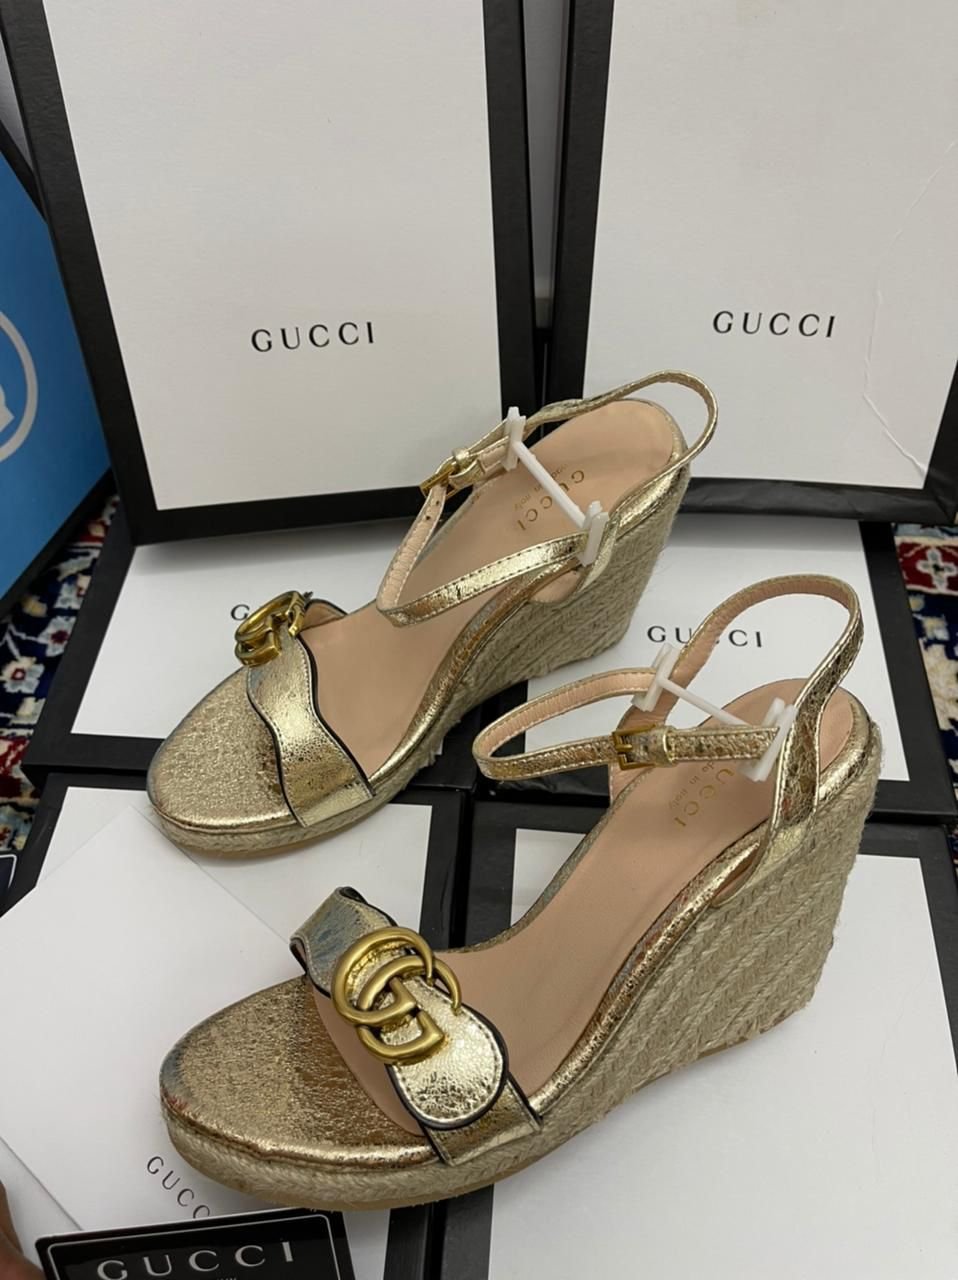 Gucci Women's Footwear.